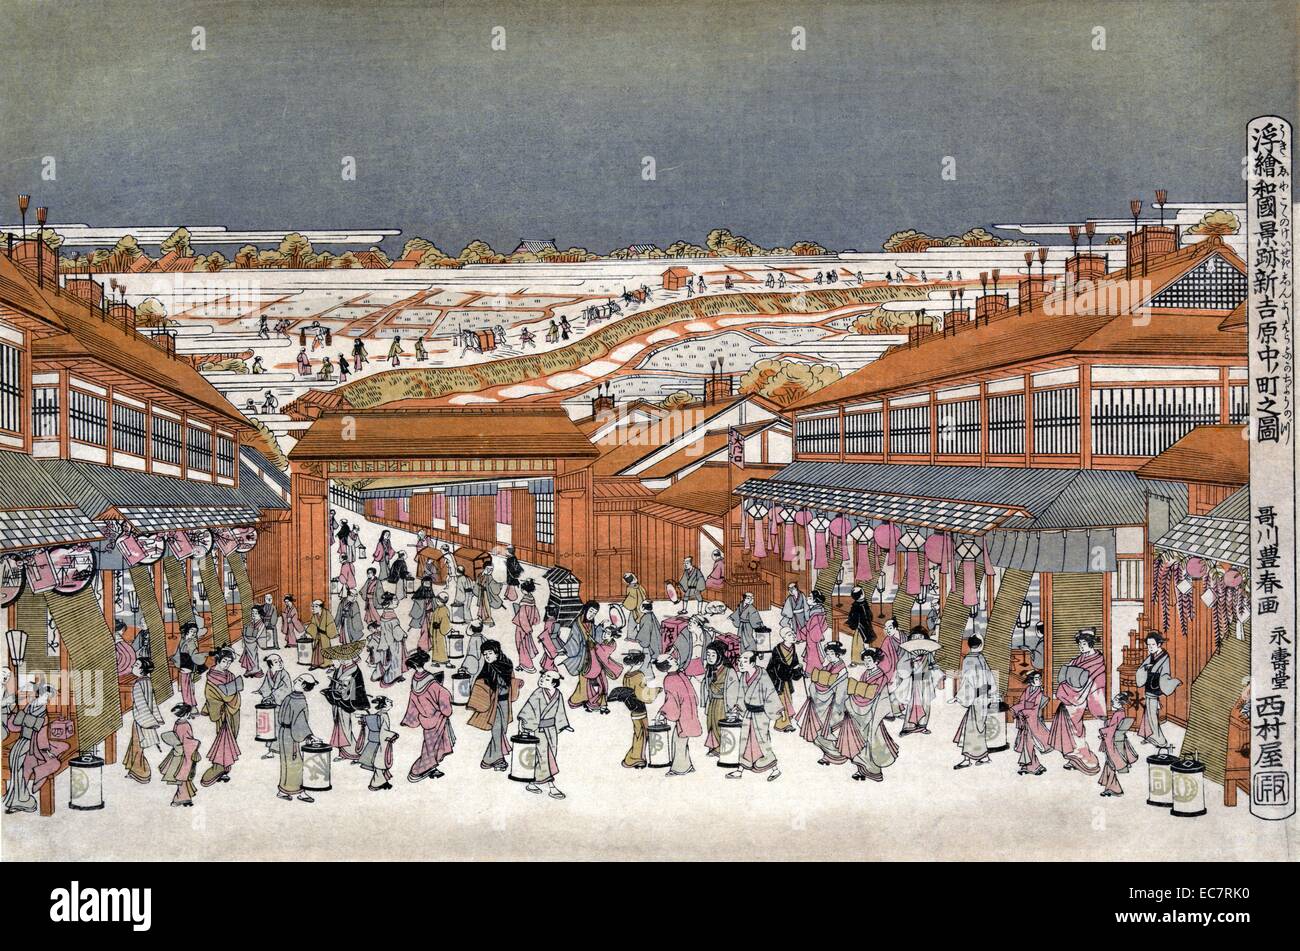 Perspektive Bild von berühmten Orten von Japan: Nakanocho in Shin-Yoshiwara. Durch Toyoharu Utagawa; 1735-1814. Drucken zeigt viele Leute auf dem Nakanocho Boulevard in der Nacht in der Nähe des Tor der Shin-Yoshiwara vergnügen Distrikt von Tokio; evtl. während des Laternenfest; mit den Teehäusern und Geschäfte entlang der Straße. Stockfoto